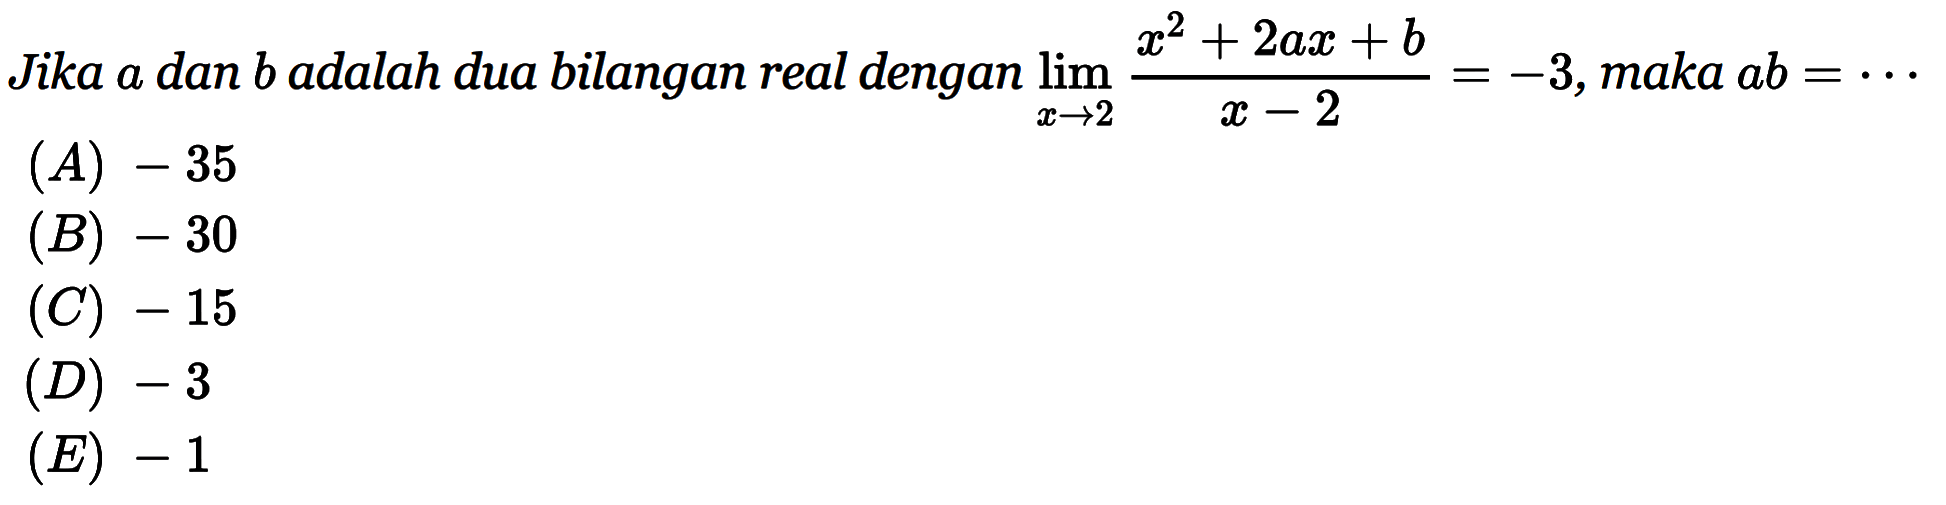 Jika a dan b adalah dua bilangan real dengan lim x->2 (x^2+2ax+b)/(x-2)=-3, maka ab= 